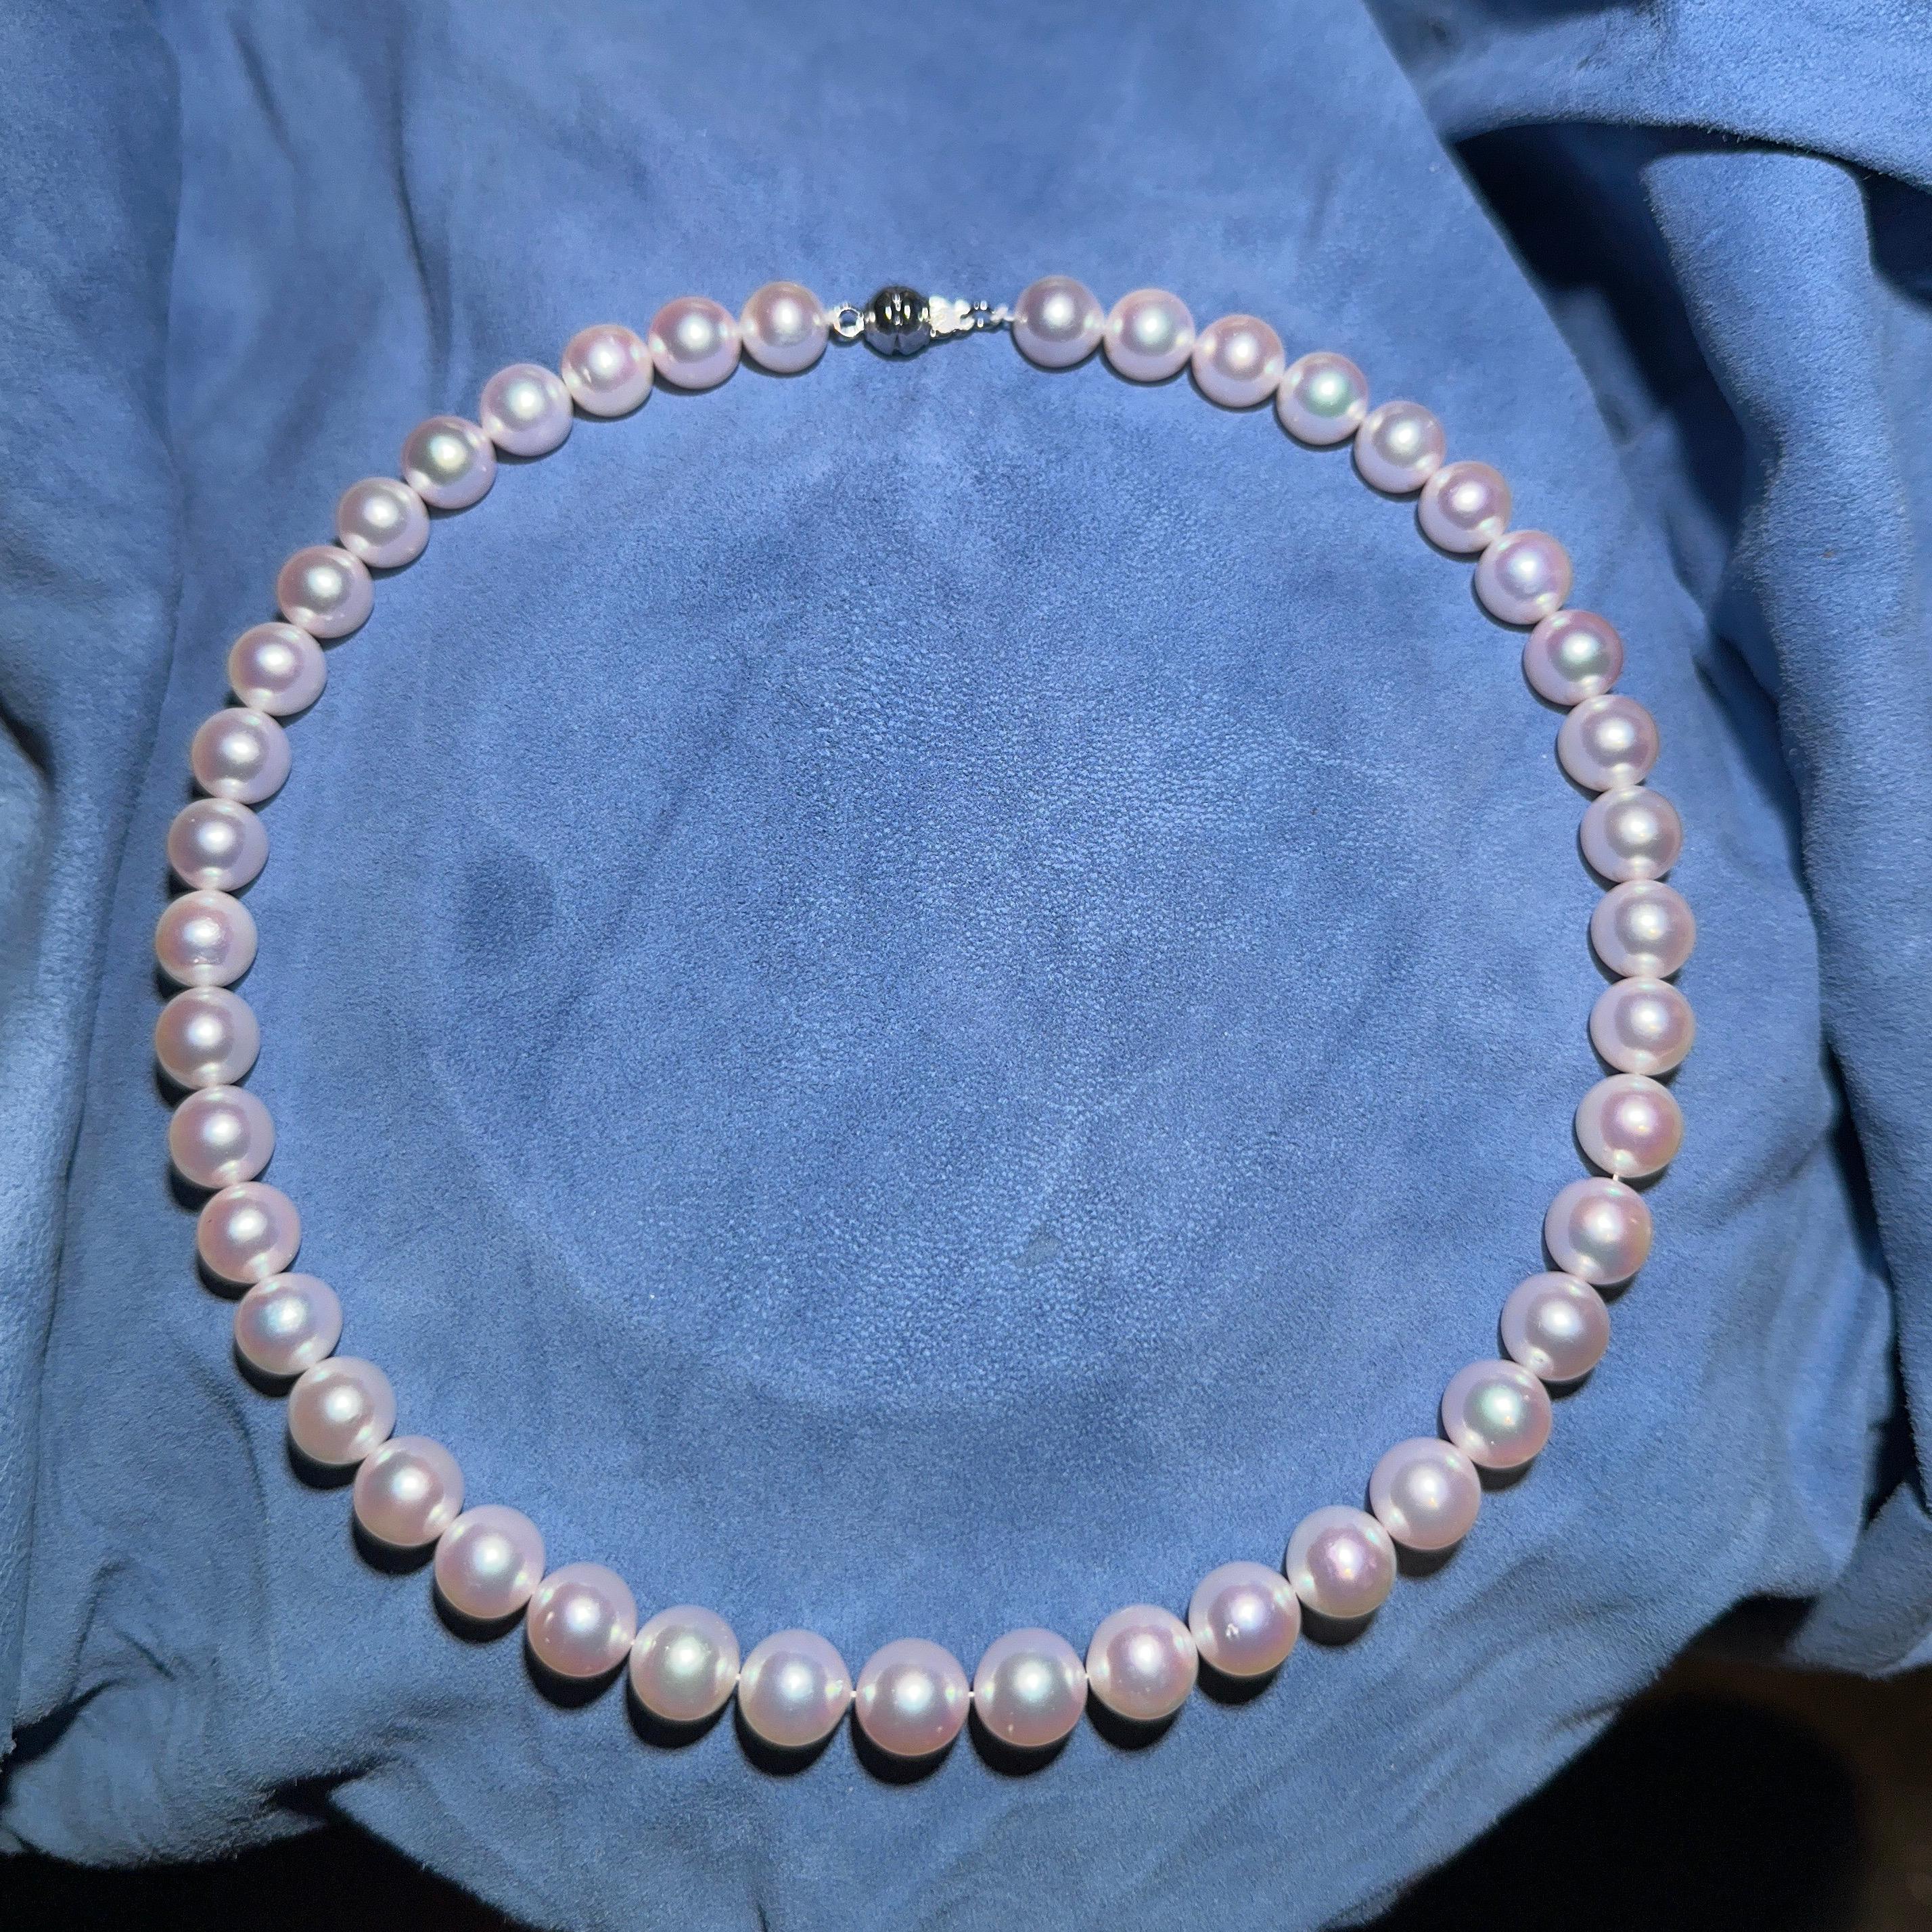 Hilo de perlas blancas de akoya de matiz rosado. alto brillo con muy pocas imperfecciones. 
8,5 mm con cierre de oro blanco de 18 quilates.